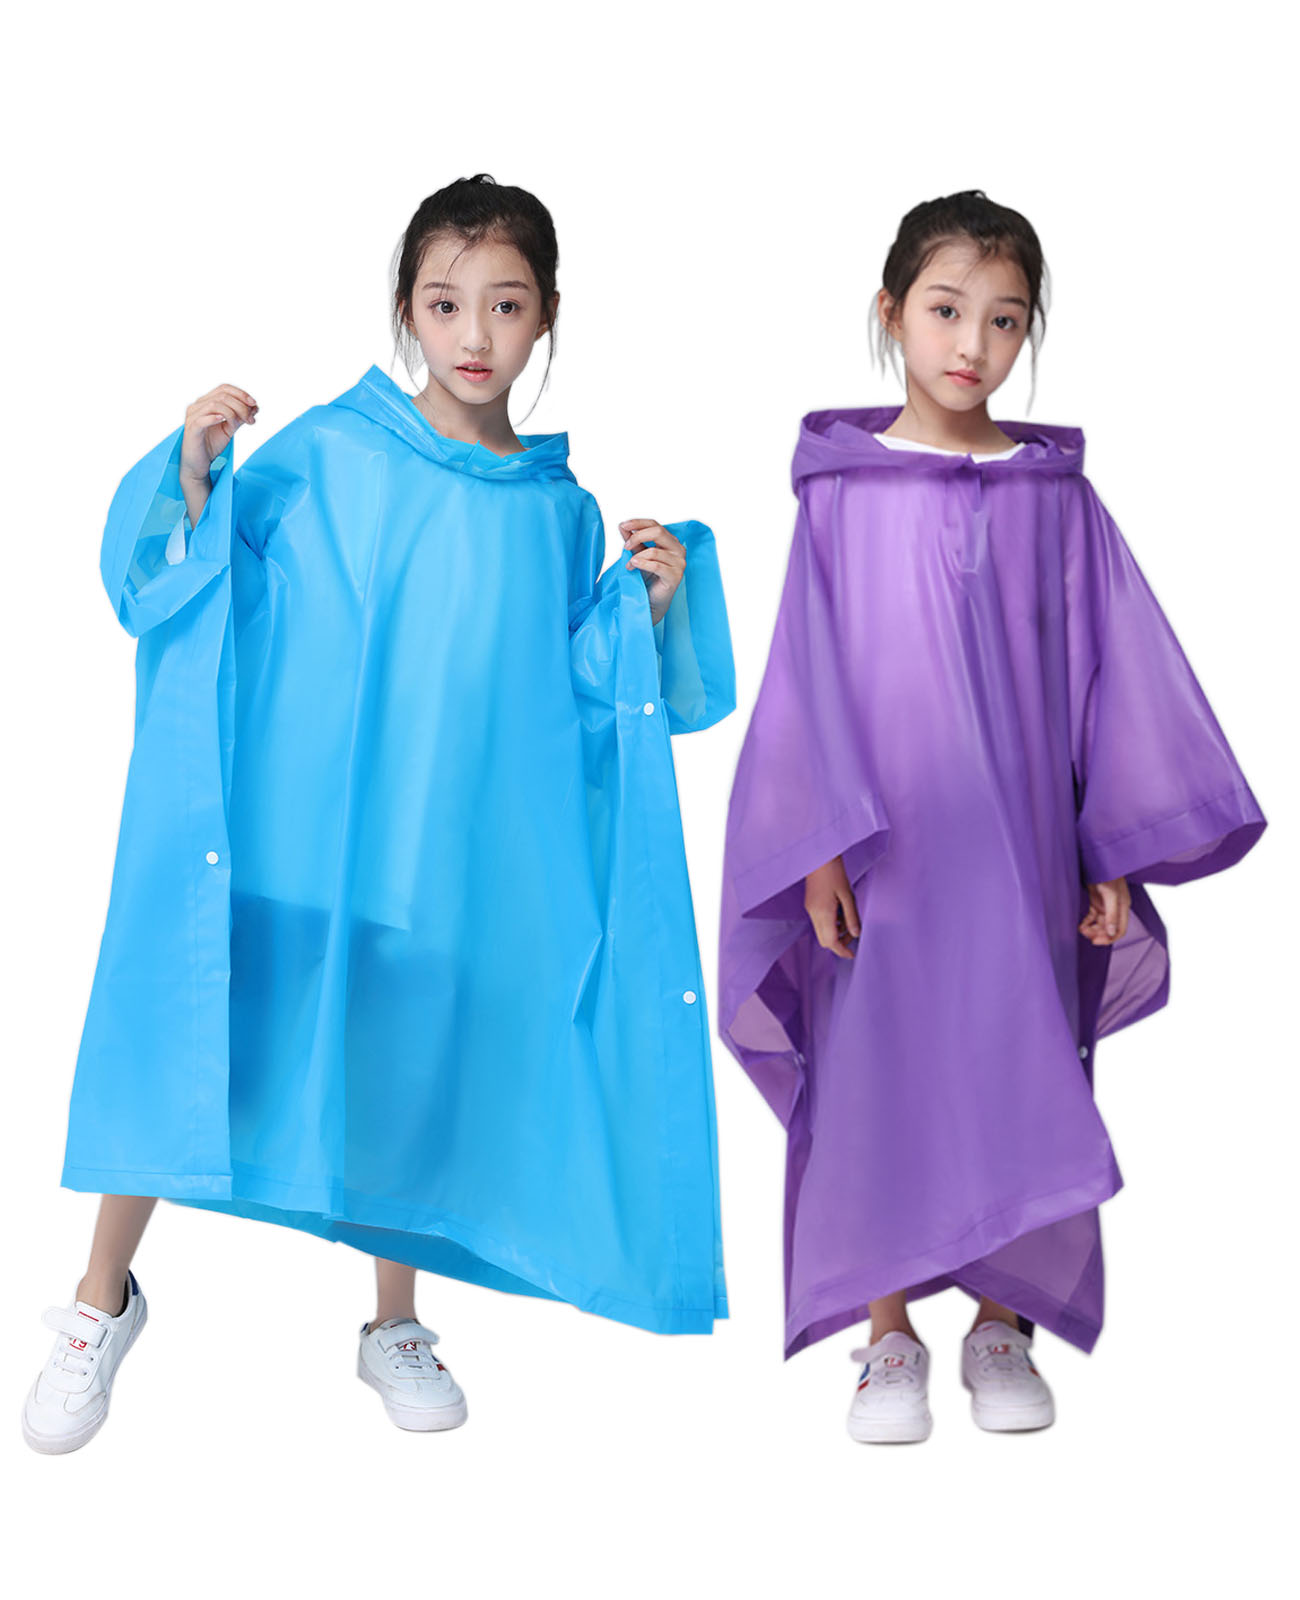 Makonus Rain Ponchos for Kids, [2 Pack] EVA Reusable Raincoat for Boys & Girls, Blue & Purple